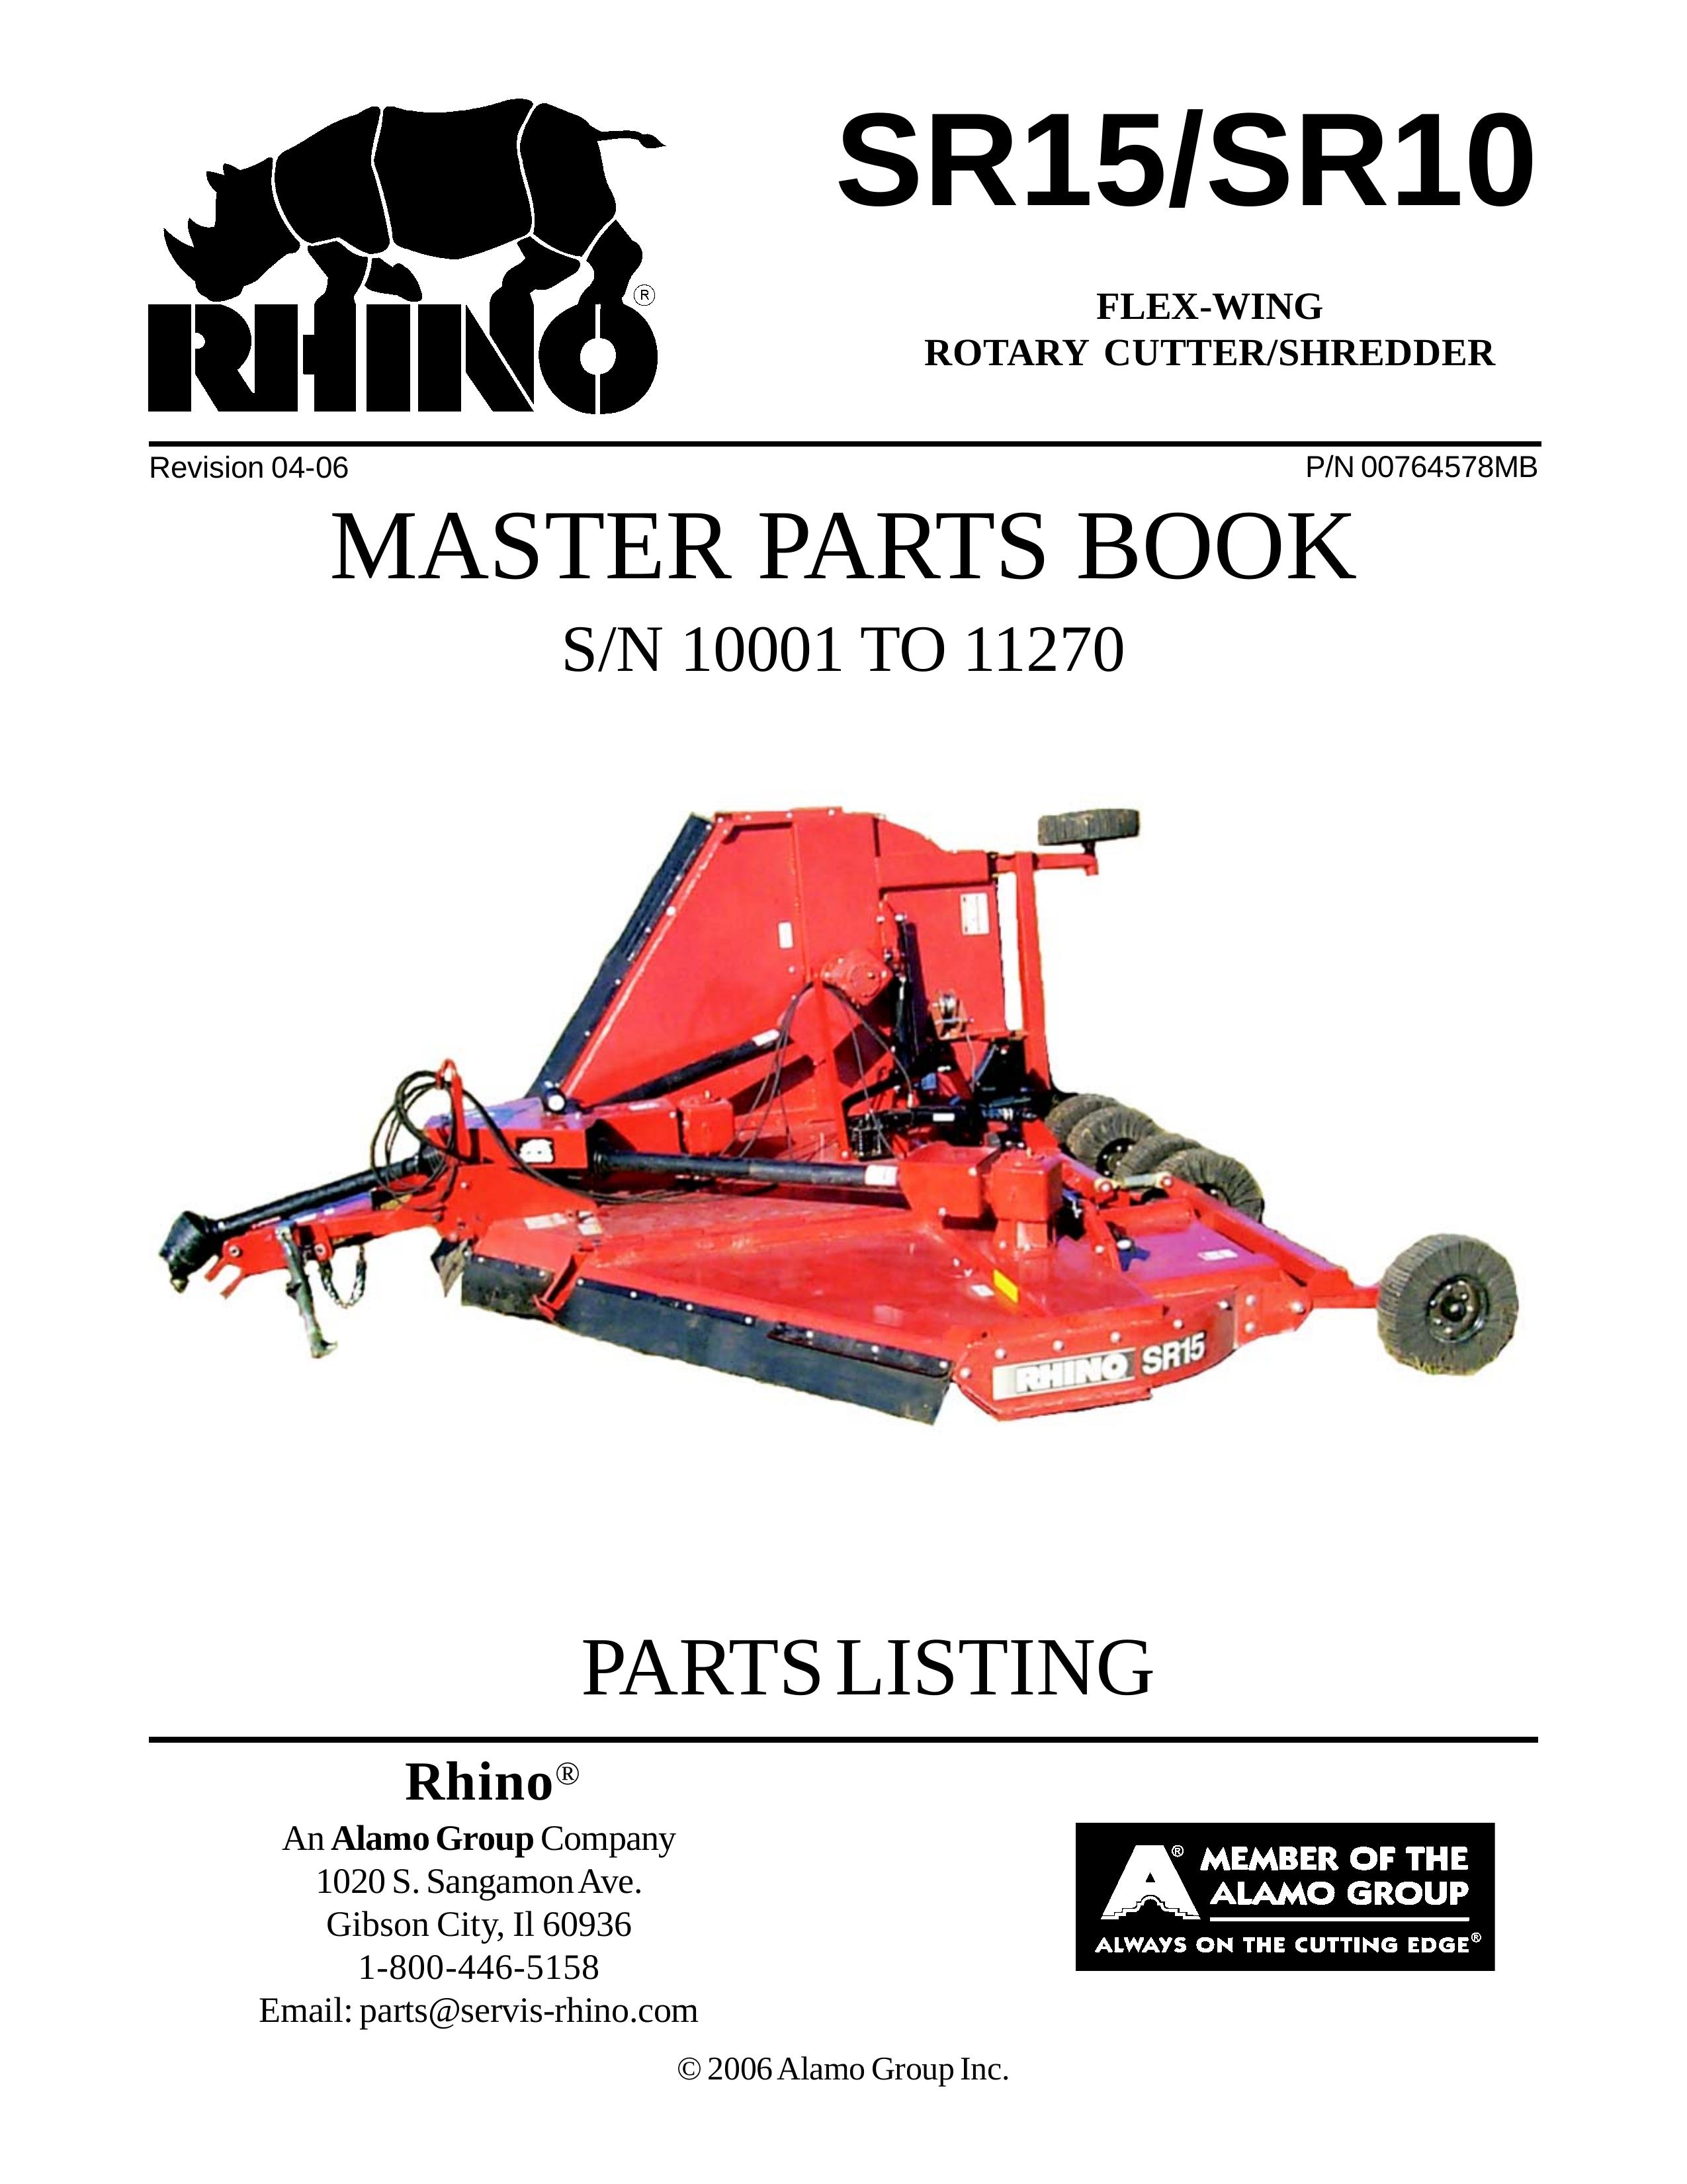 Servis-Rhino Flex-Wing Rotary Cutter/Shredder Lawn Mower Accessory User Manual